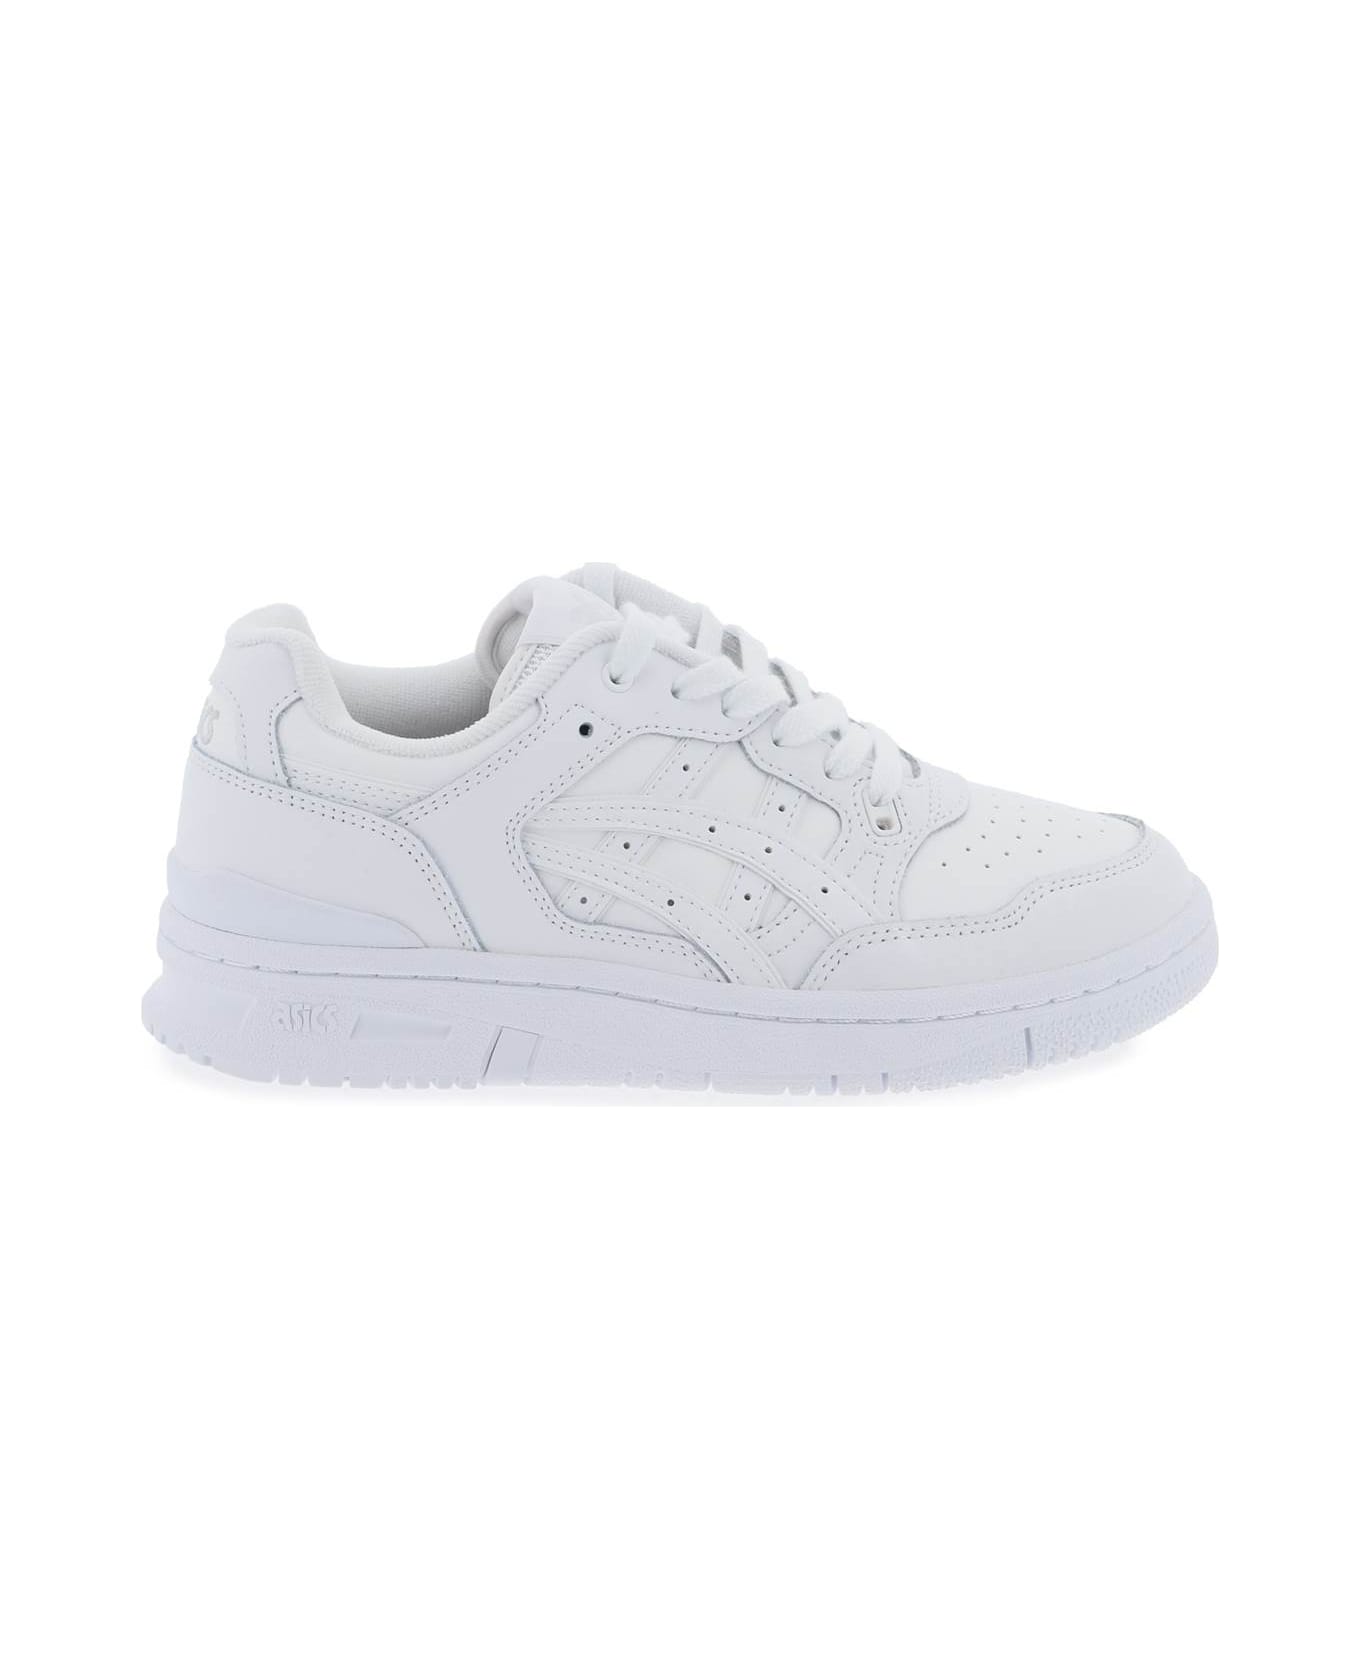 Asics Ex89 Sneakers - WHITE WHITE (White)